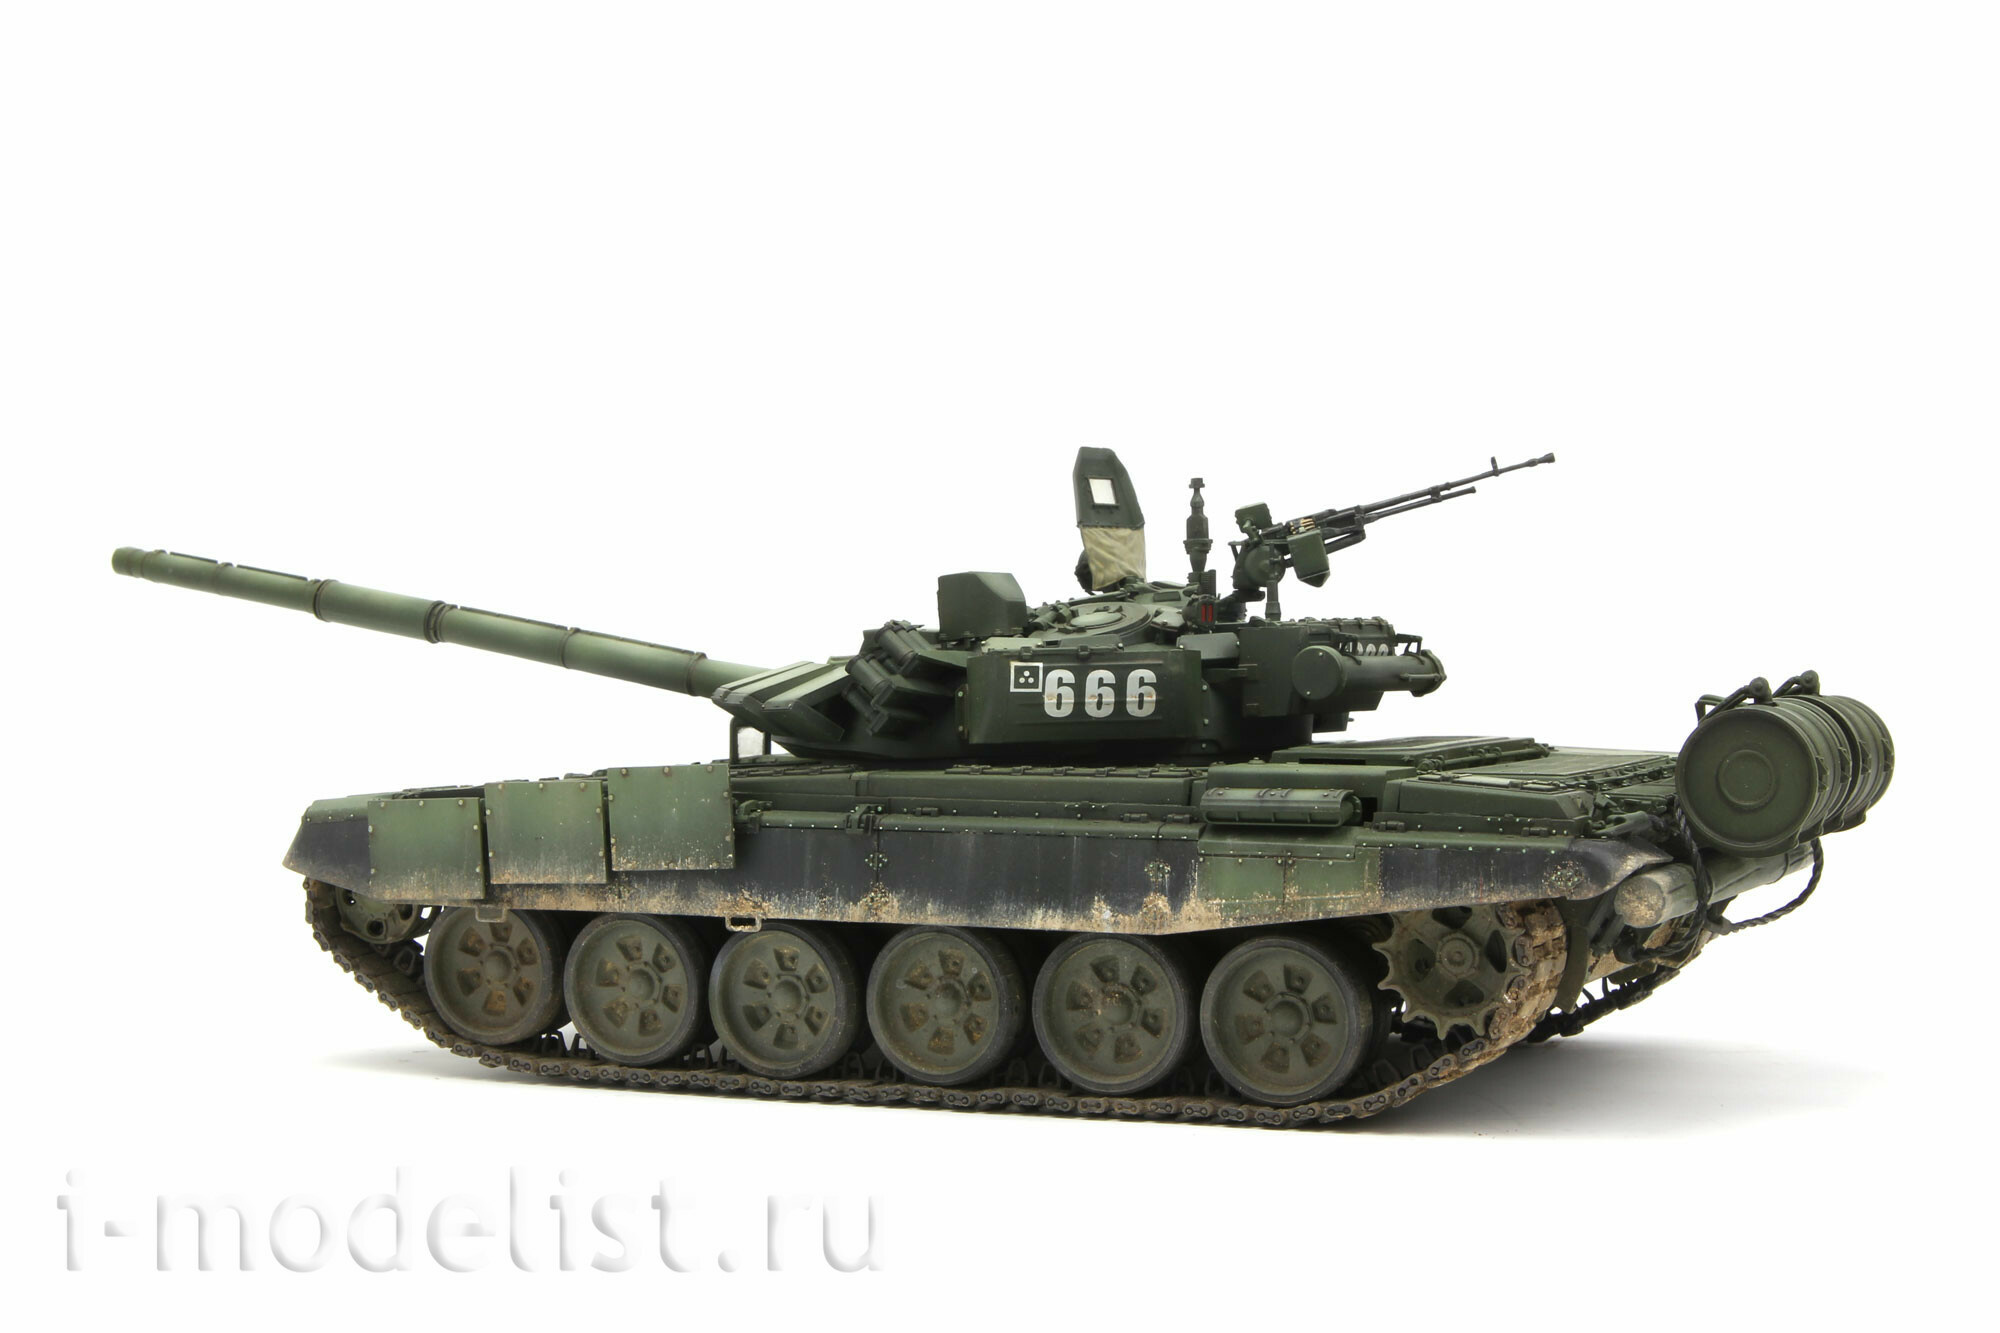 TS-028 Meng 1/35 Российский основной семьдесят второй танк B3